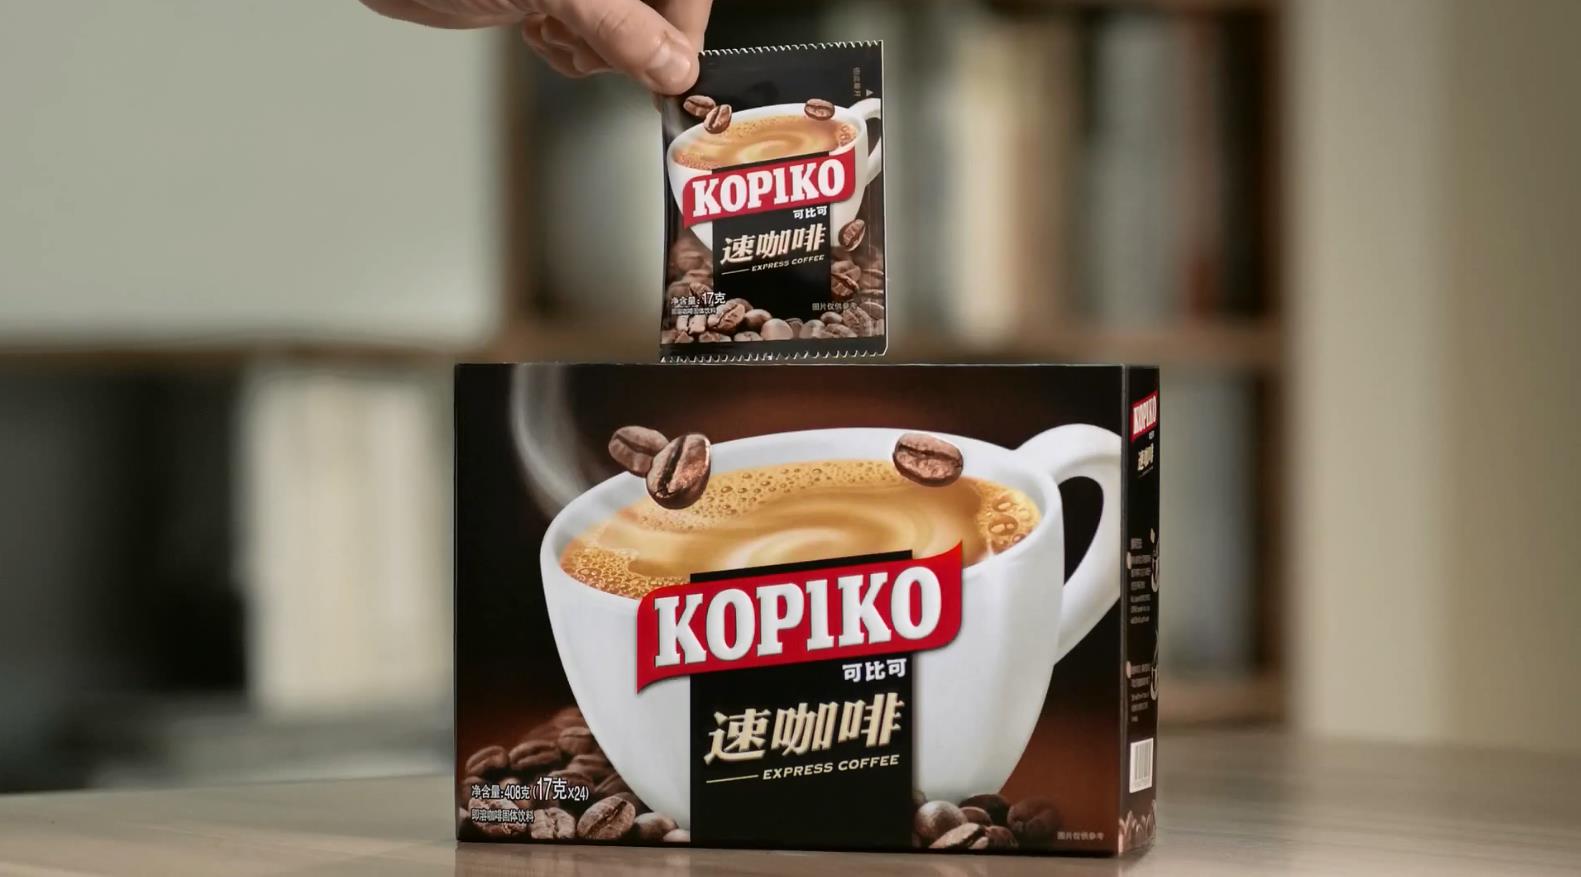 KOPIKO咖啡电视广告 - 速咖啡Office篇